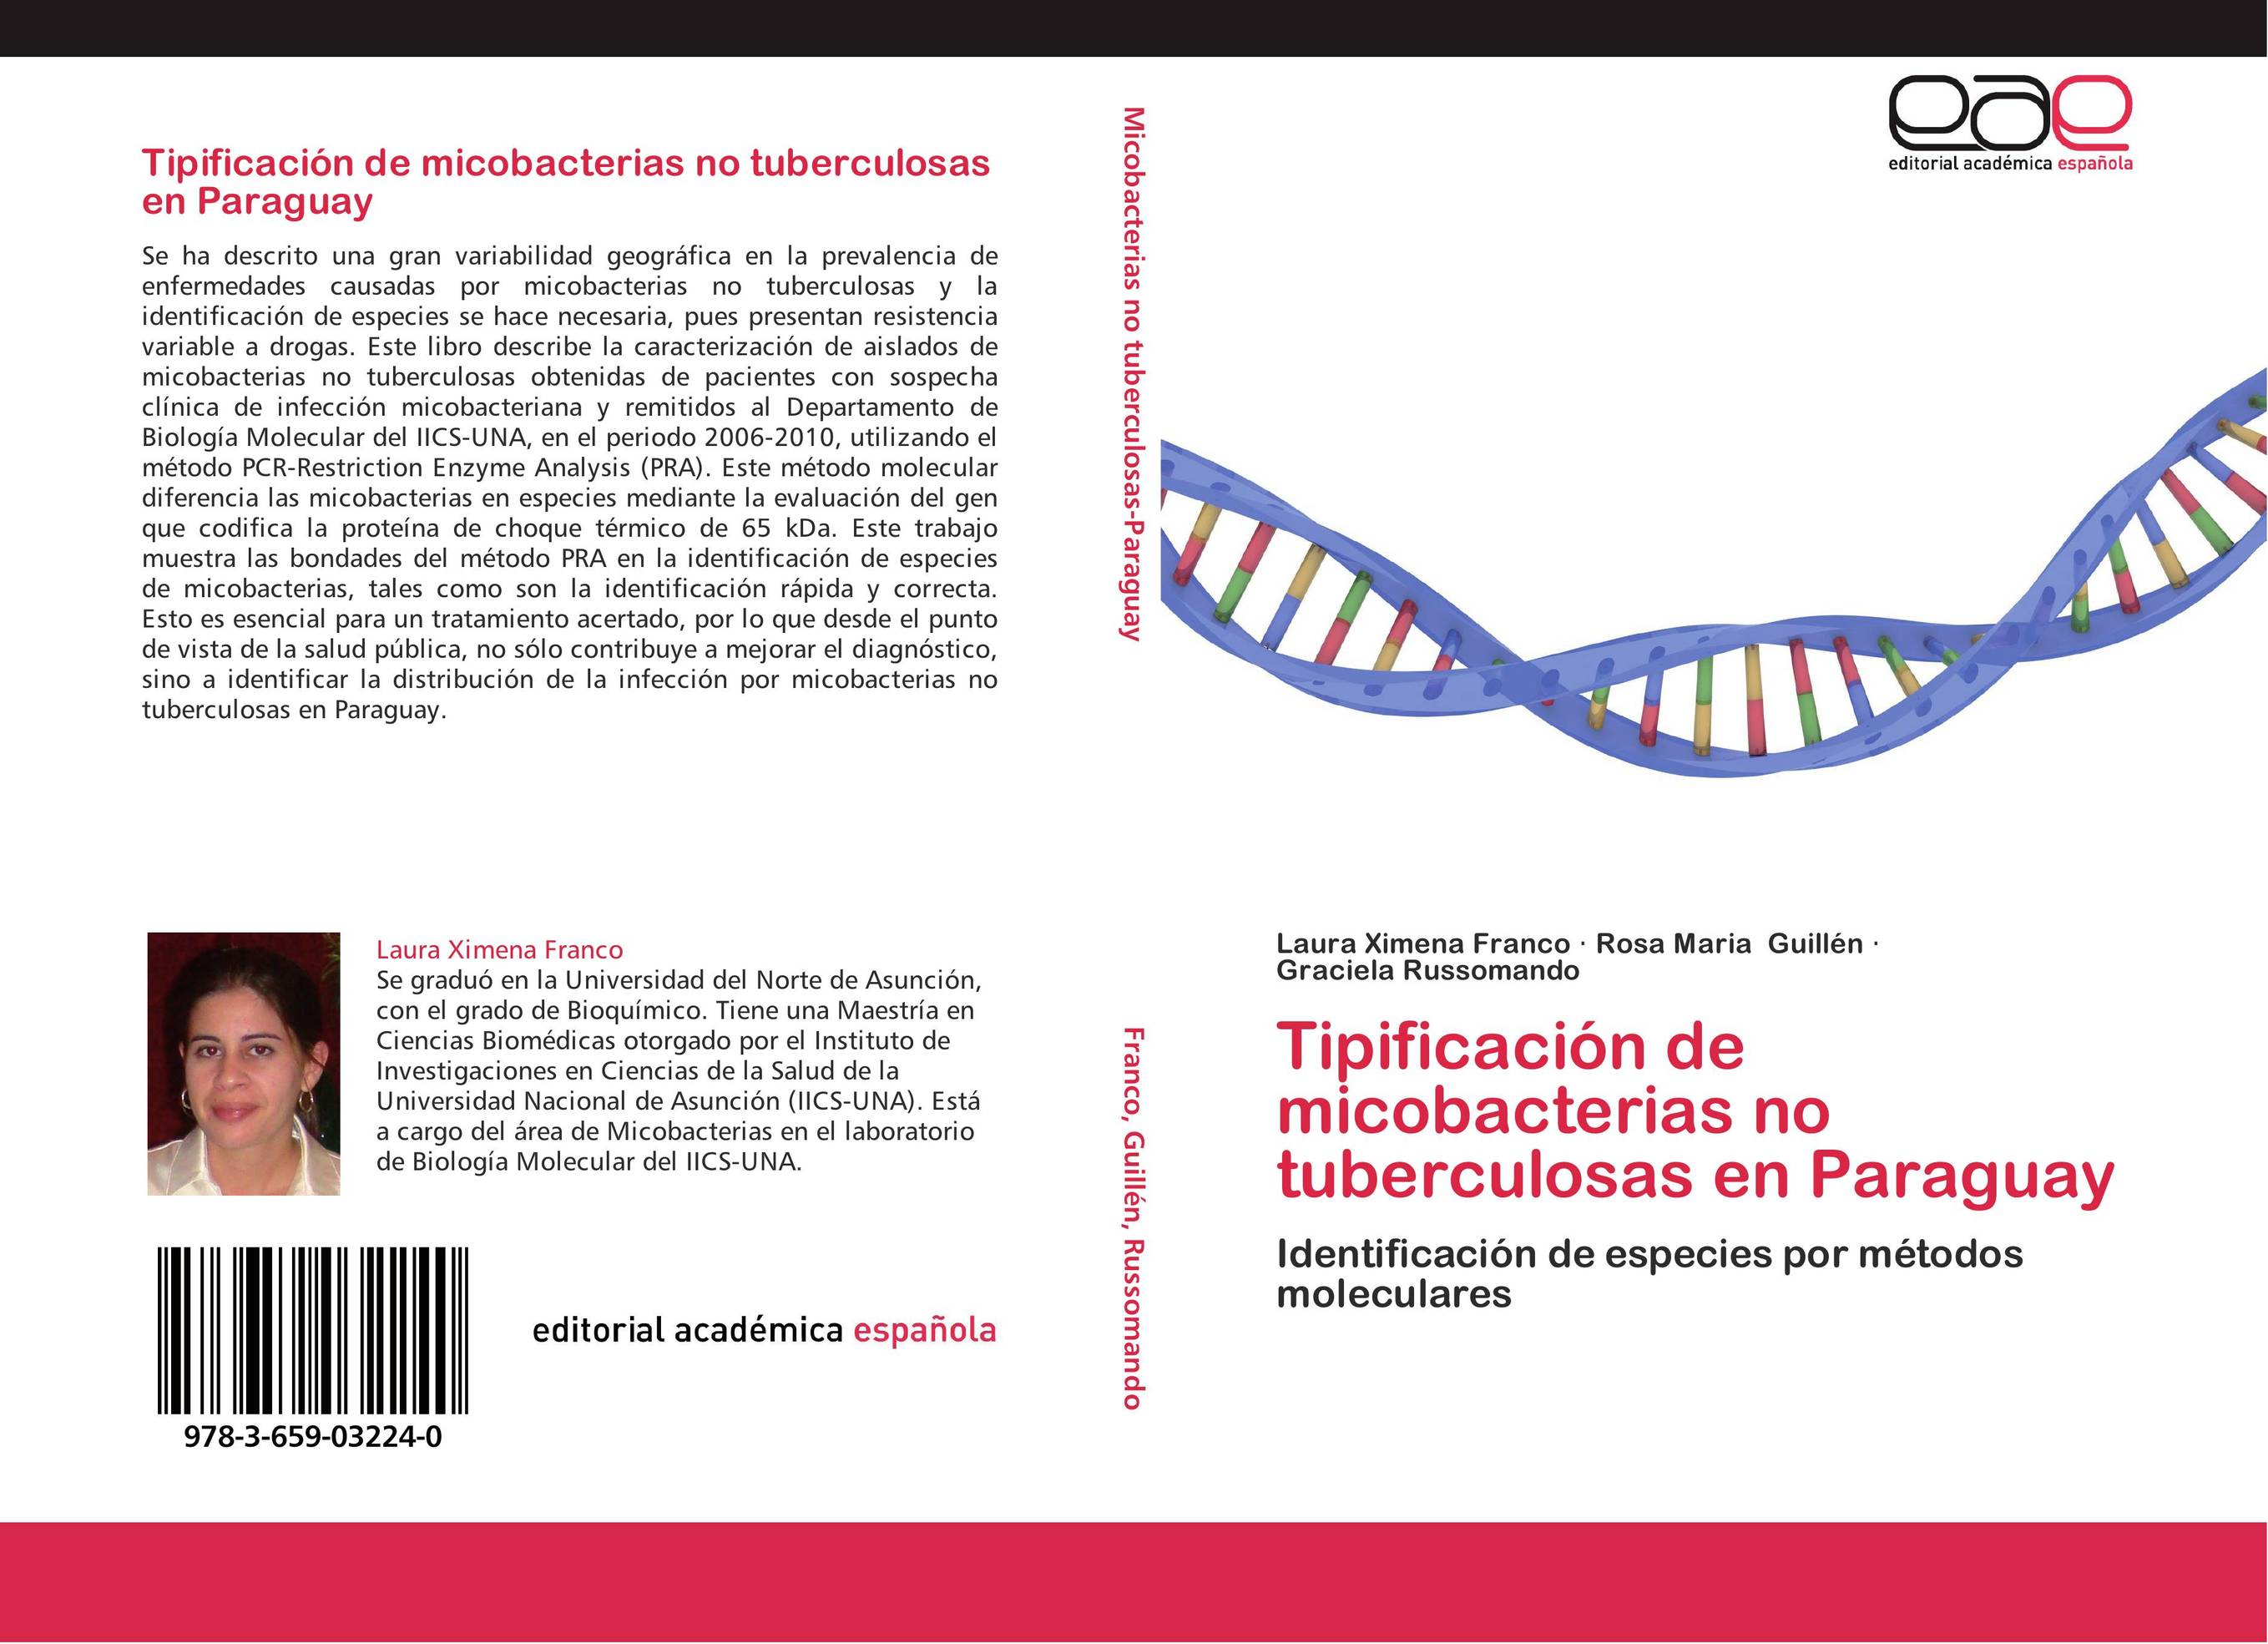 Tipificación de micobacterias no tuberculosas en Paraguay